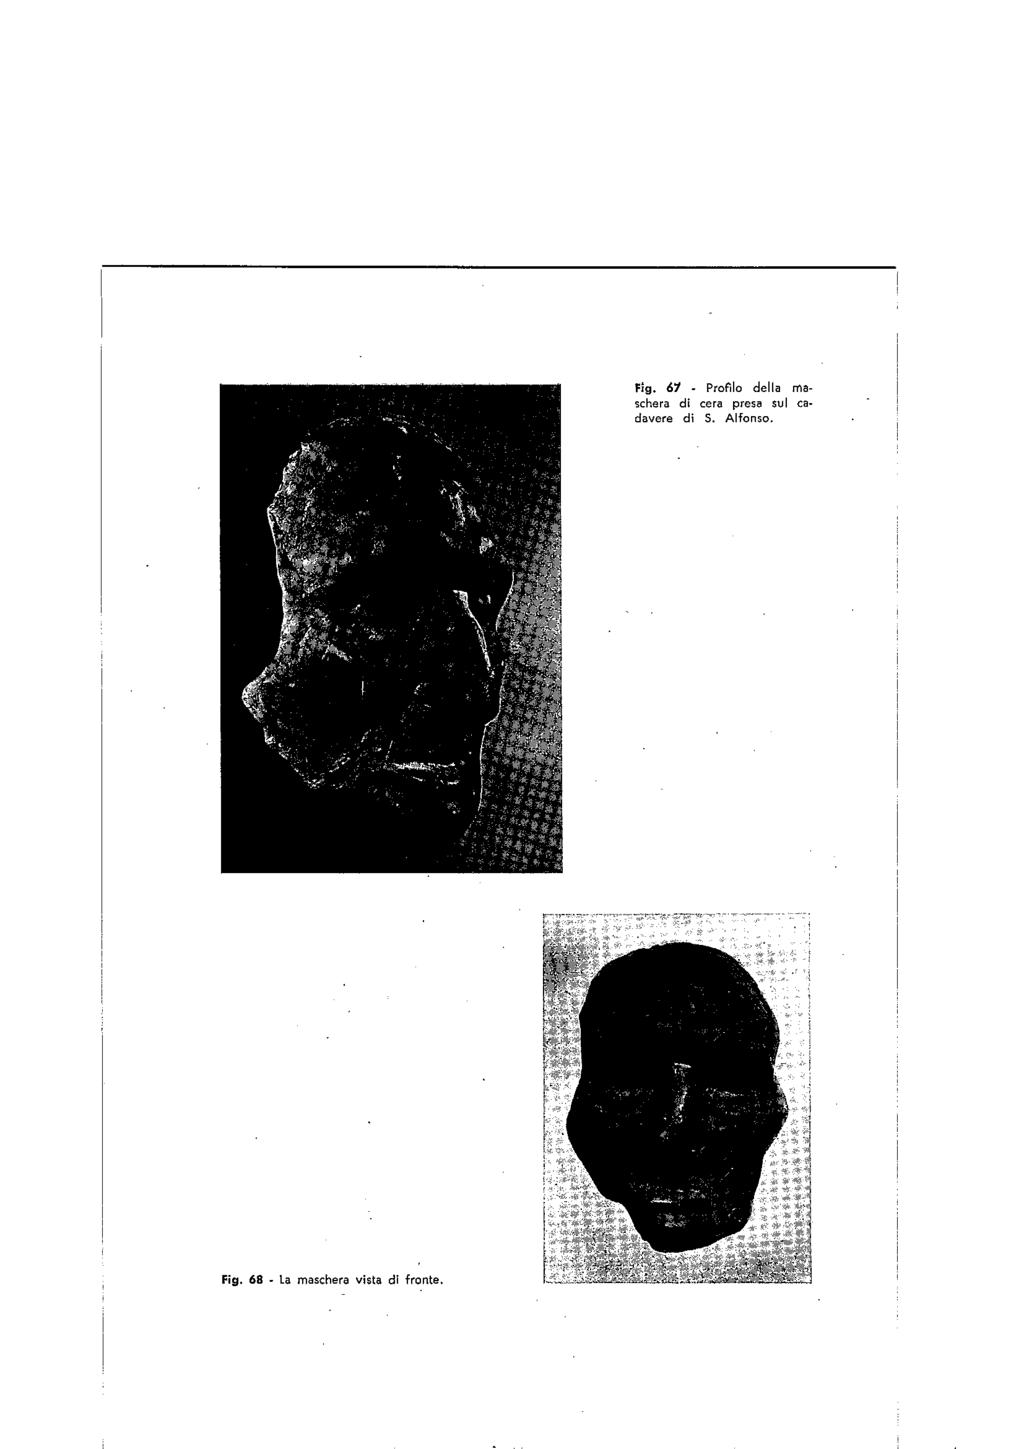 Fig. 68 - la maschera vista di fronte. Fig.